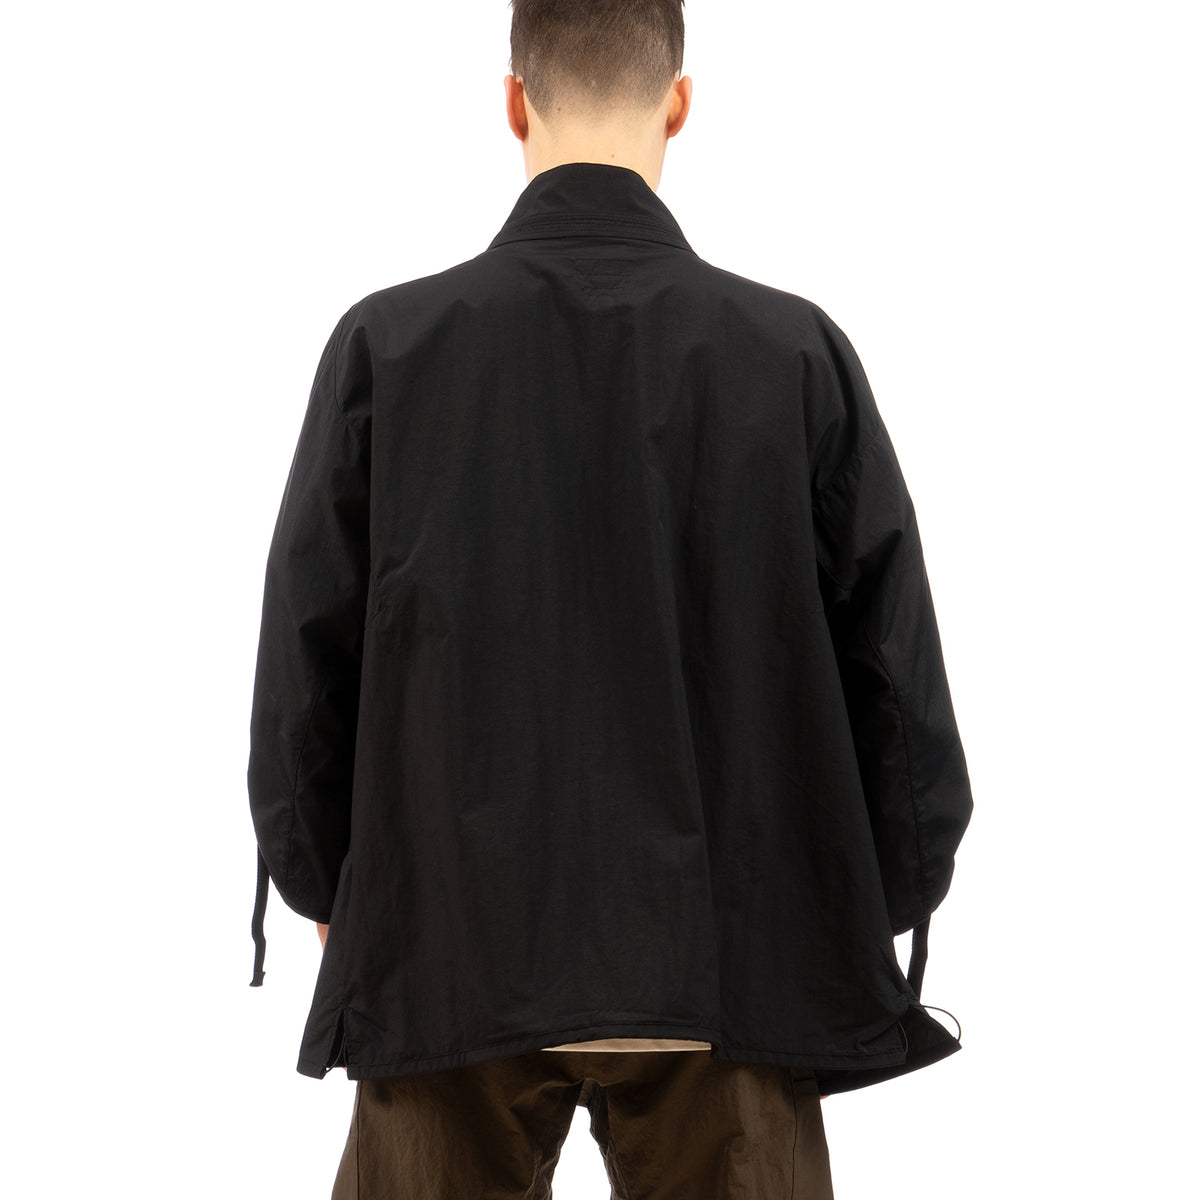 Nilmance | Kimono Jacket KNJ-01 Black - Concrete